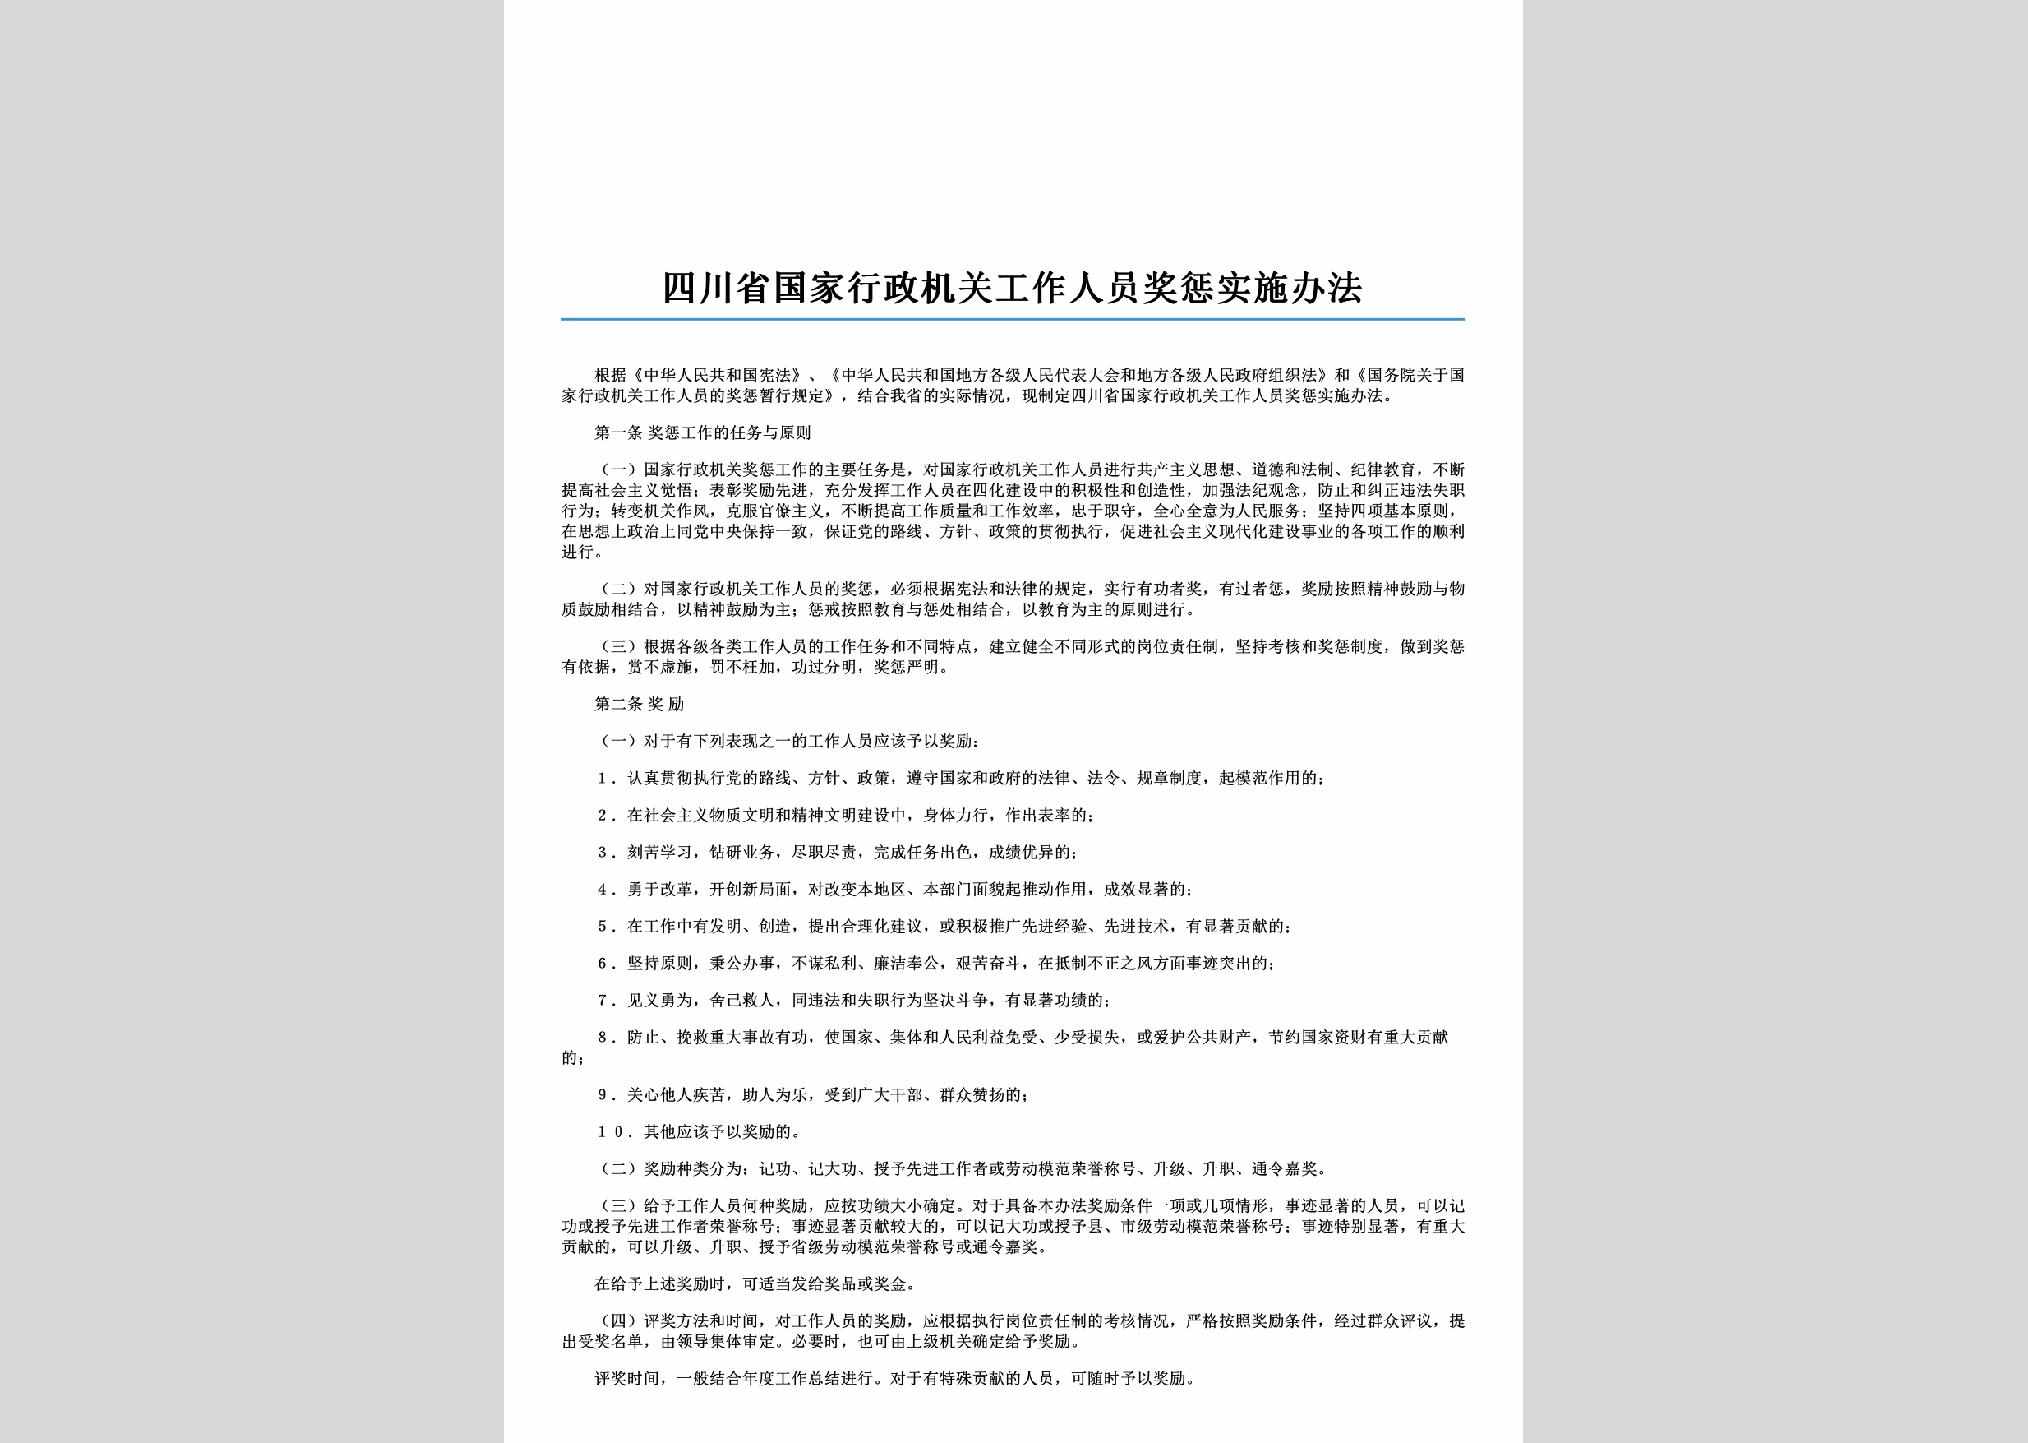 SC-GZRYJCBF-2006：四川省国家行政机关工作人员奖惩实施办法